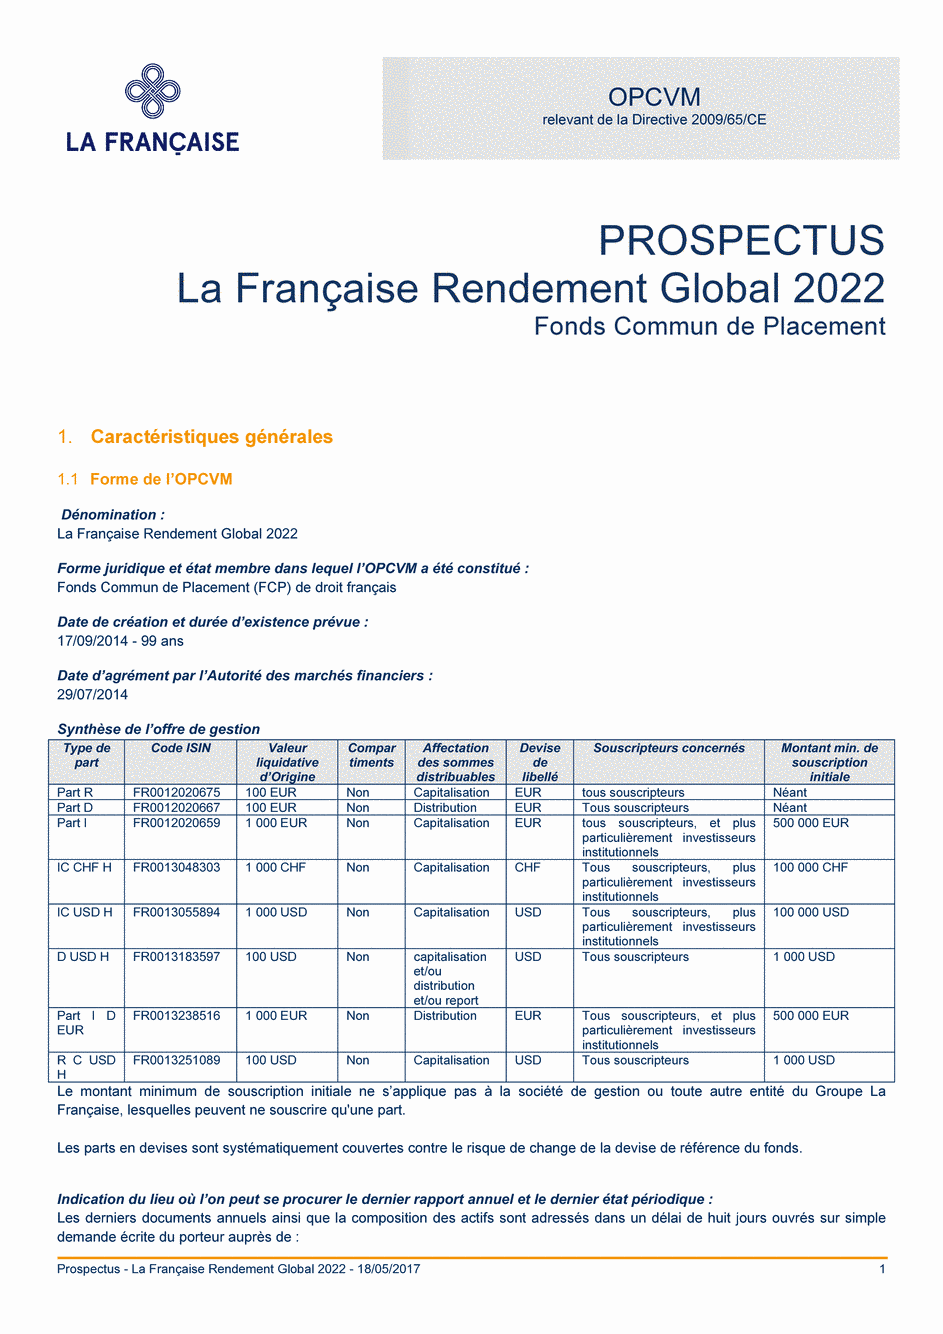 Prospectus La Française Rendement Global 2022 - Part I D EUR - 18/05/2017 - Français